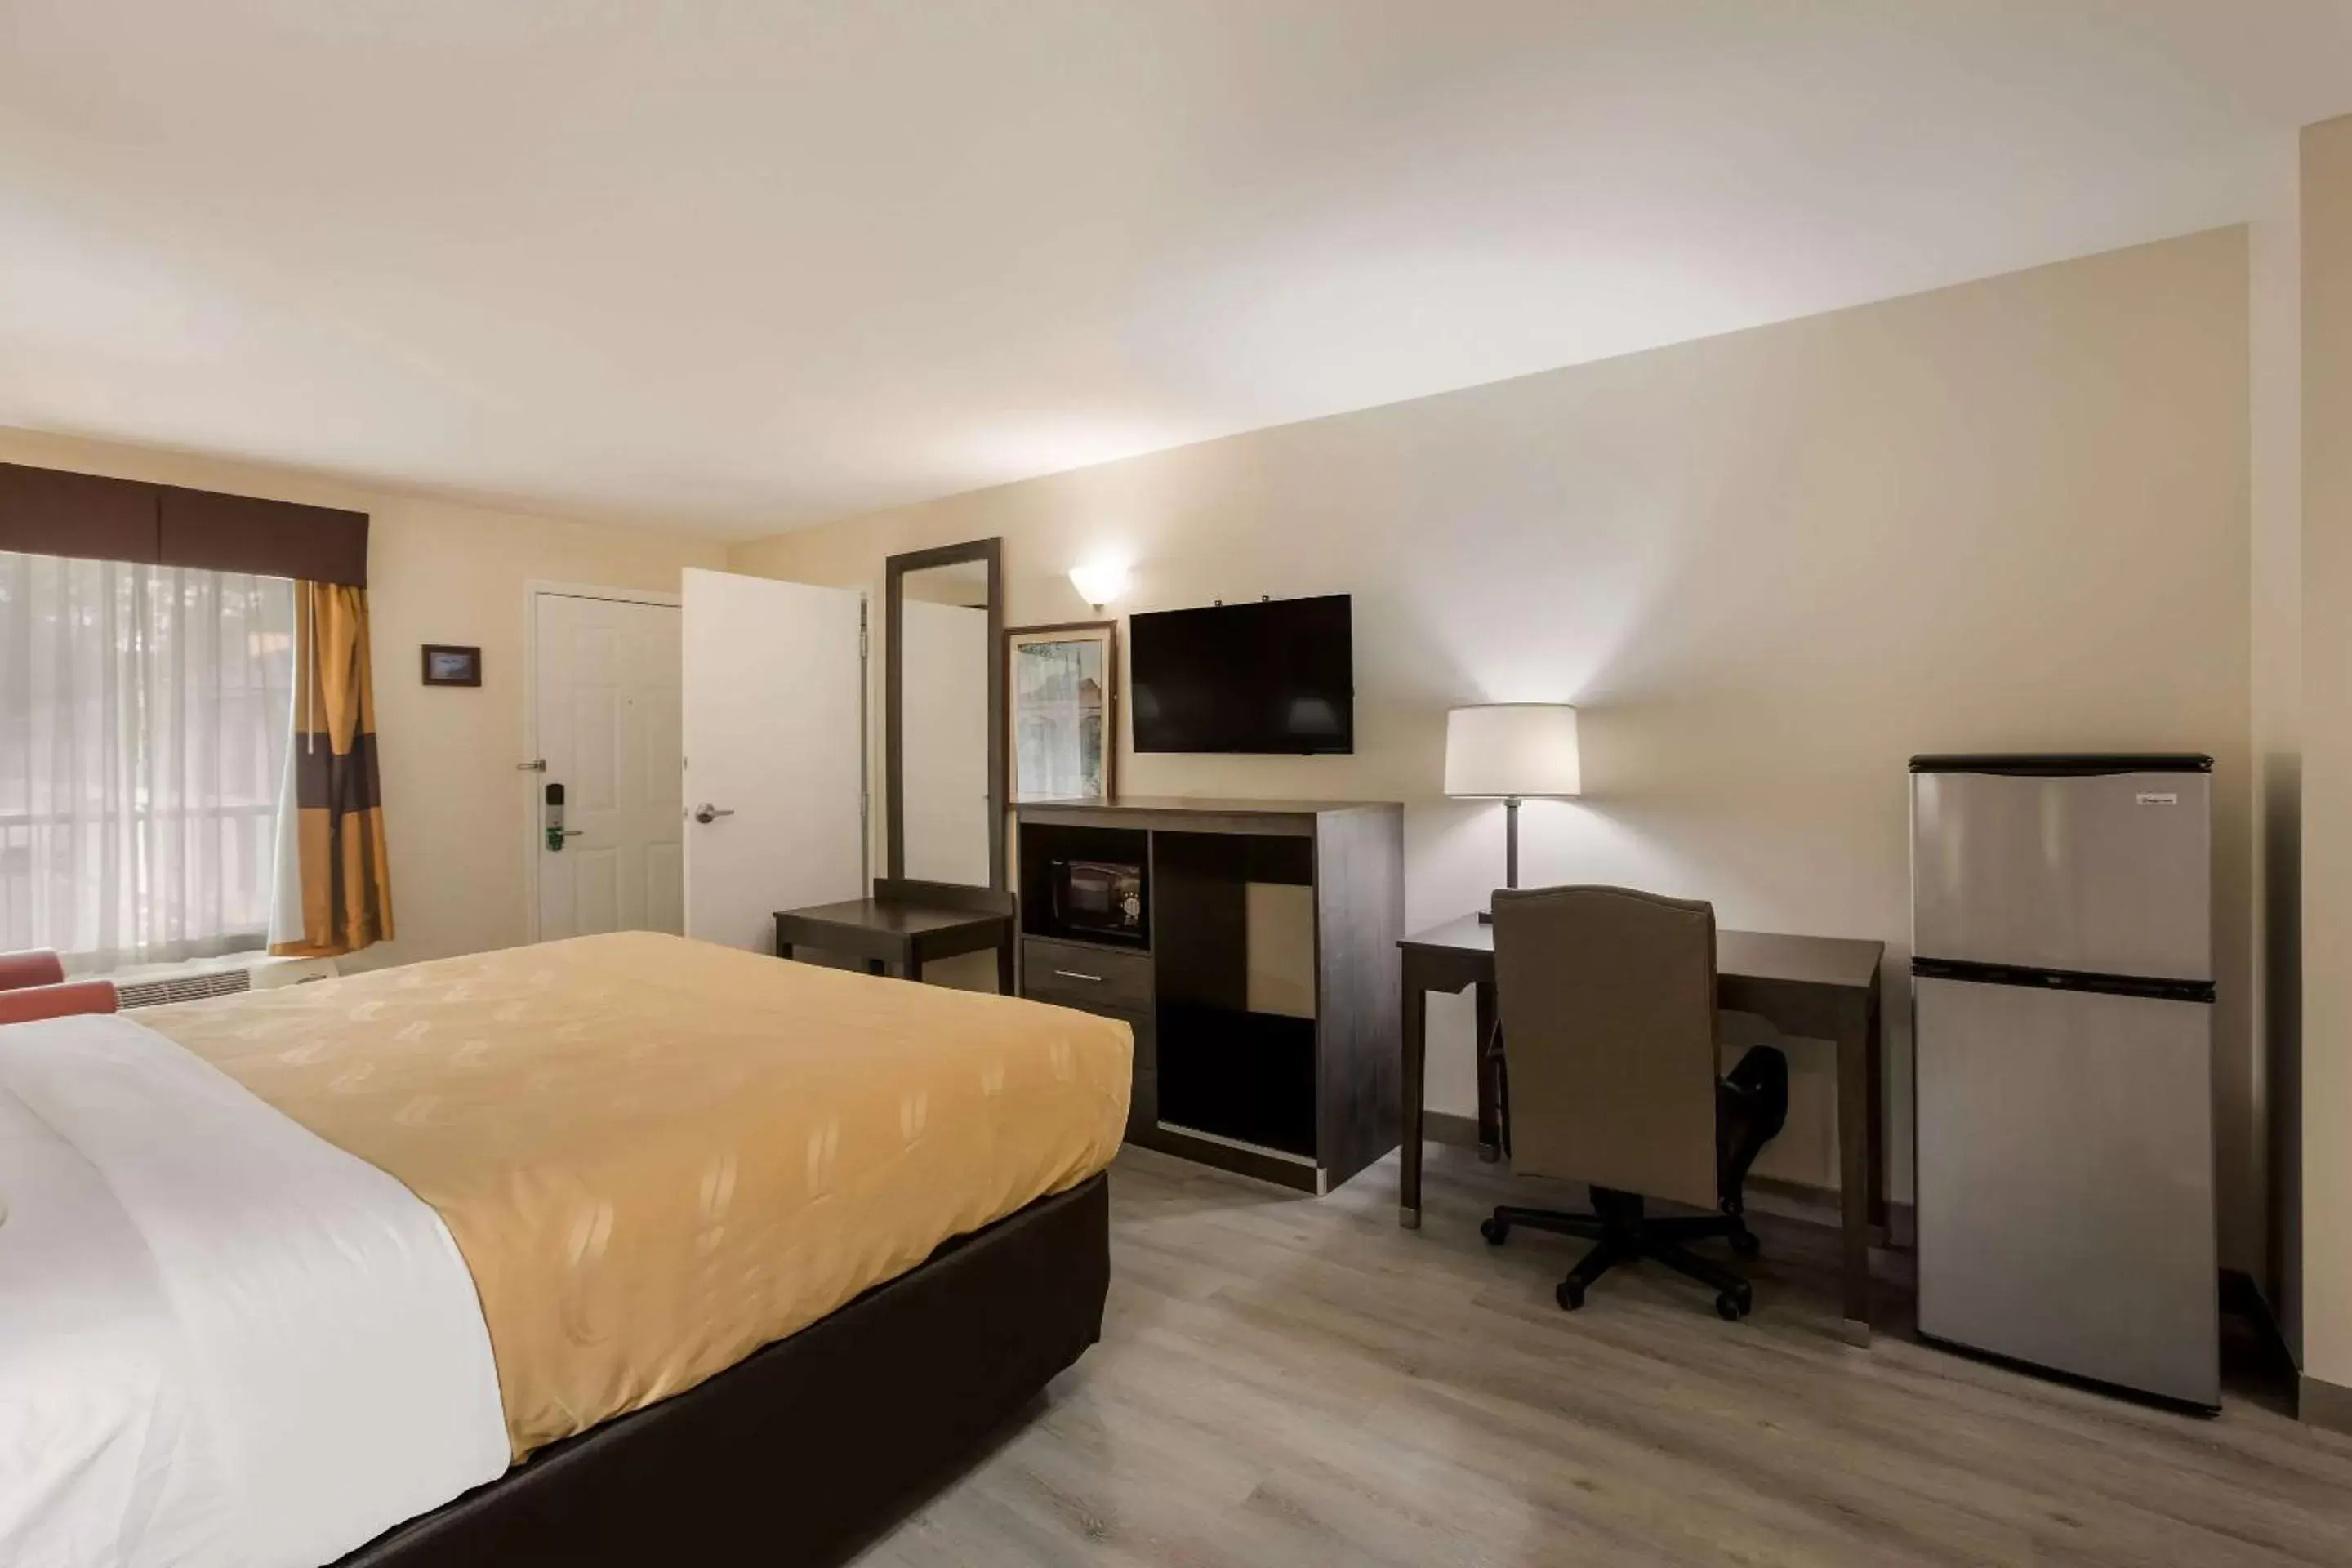 Bedroom, TV/Entertainment Center in Quality Inn & Suites near Lake Oconee